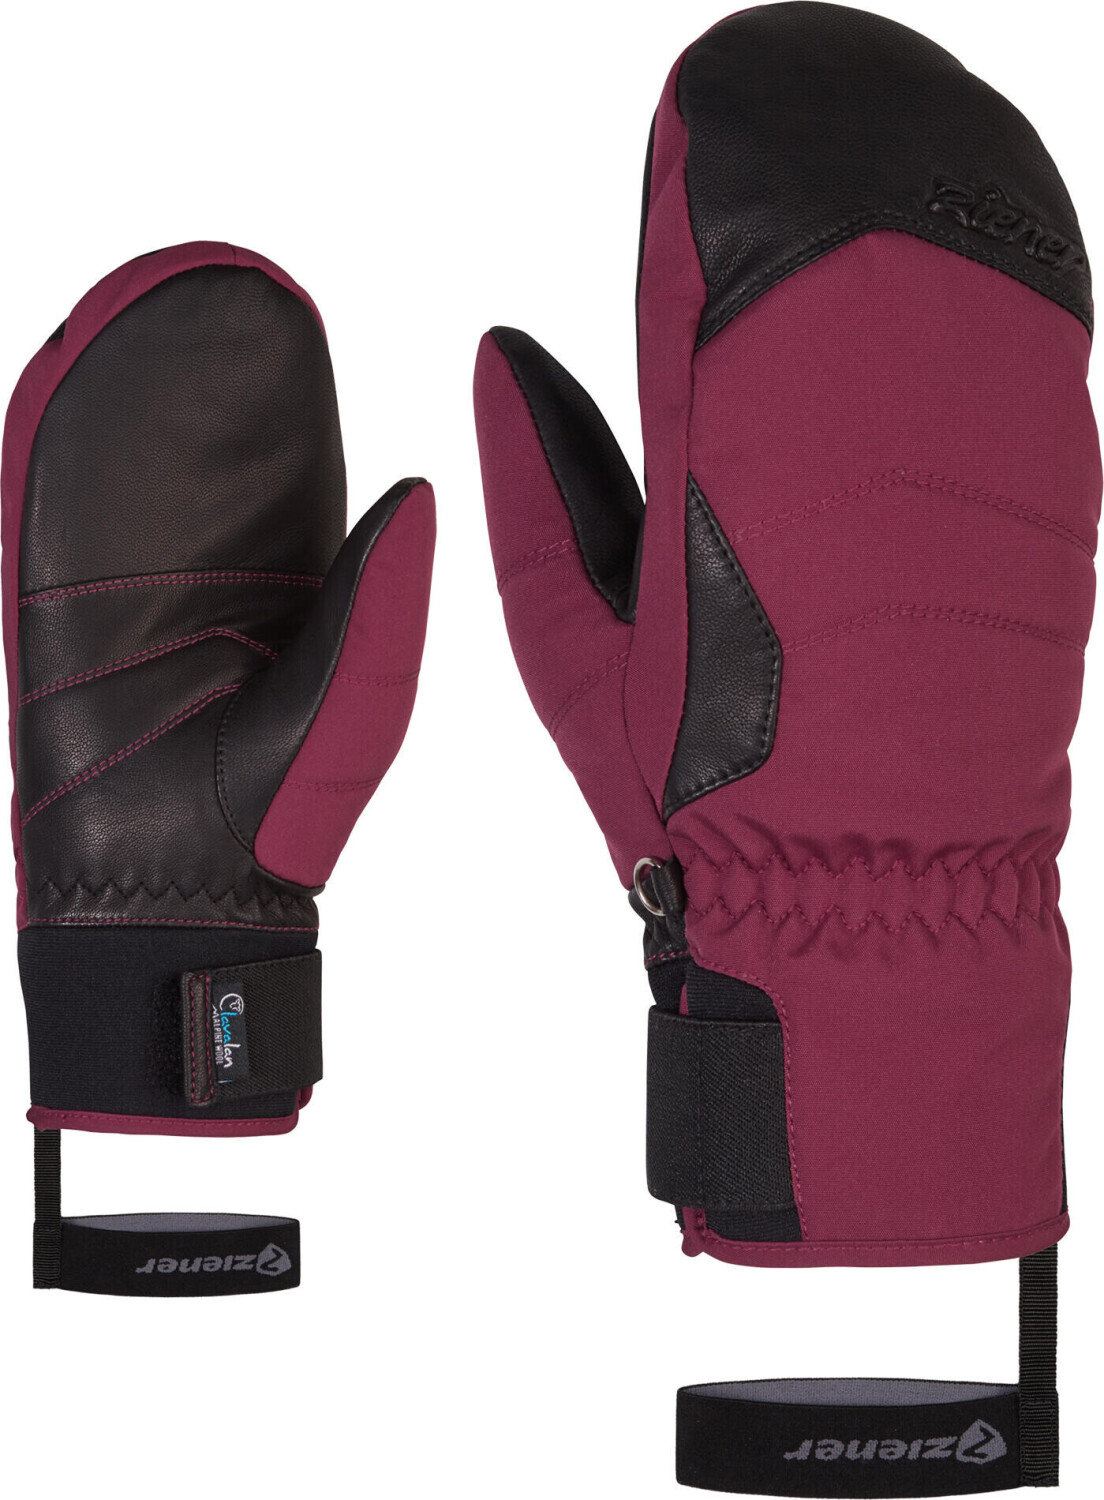 Ziener Kalea ASR AW Mitten Lady Glove (801178) ab 33,28 € | Preisvergleich  bei